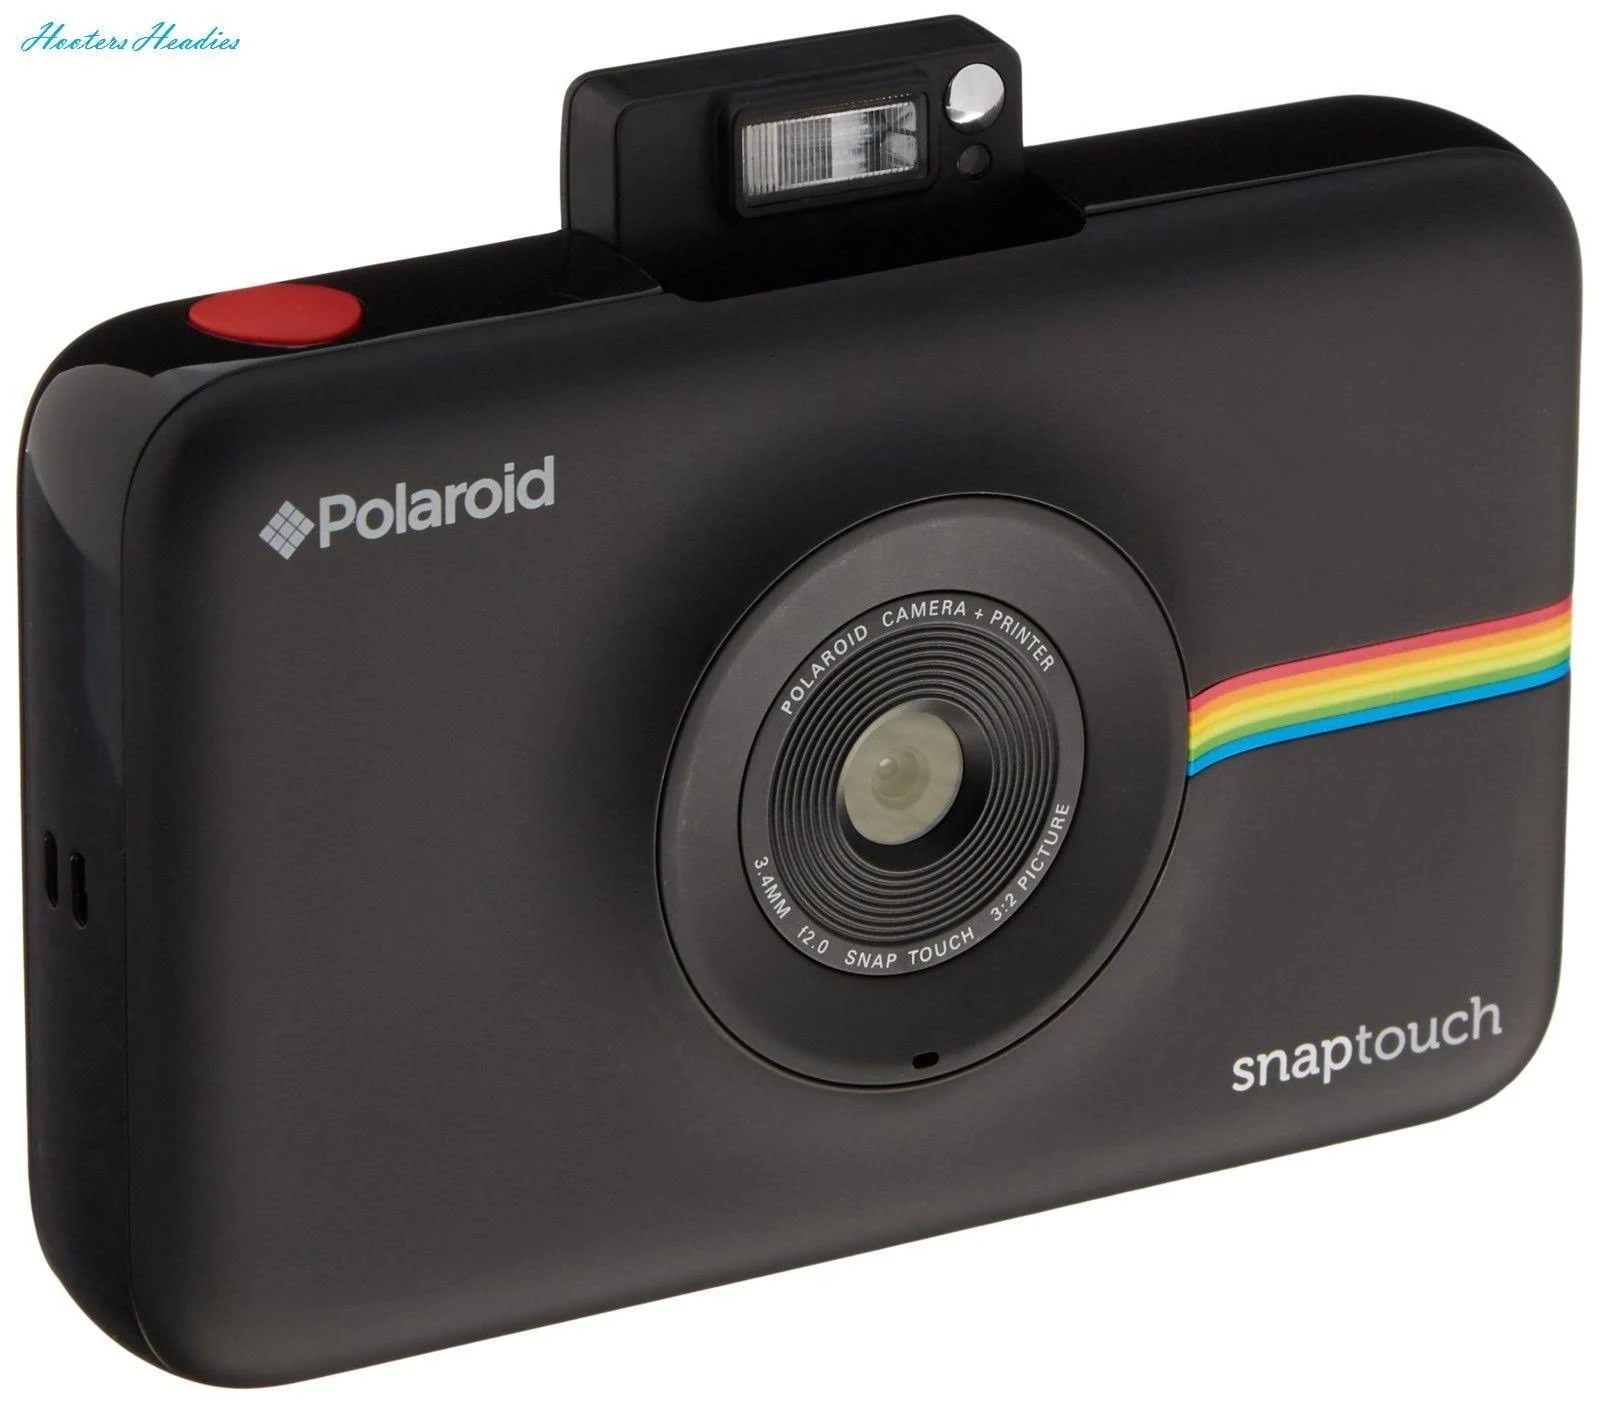 Polaroid Appareil photo numérique à impression instantanée Snap Touch avec écran LCD (noir) avec technologie d'impression Zink Zero Ink